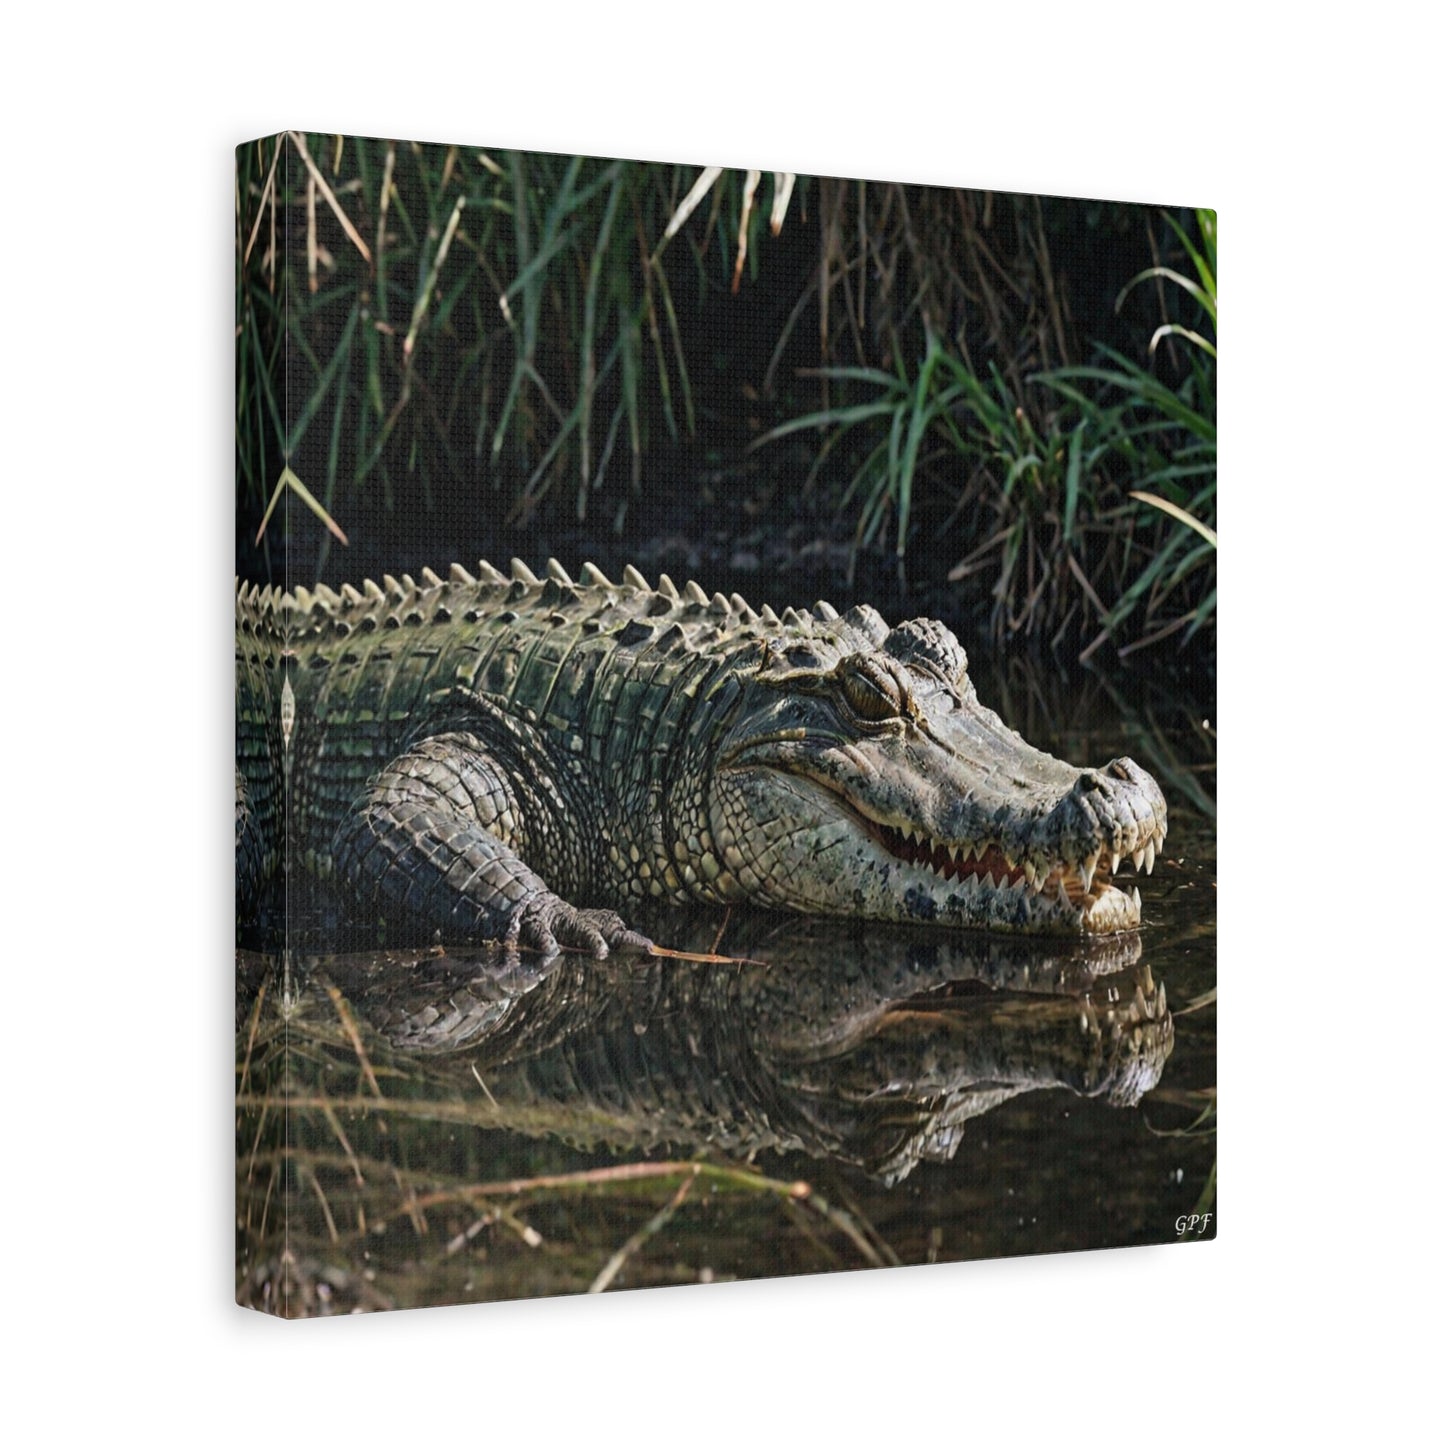 Crocodile (031)